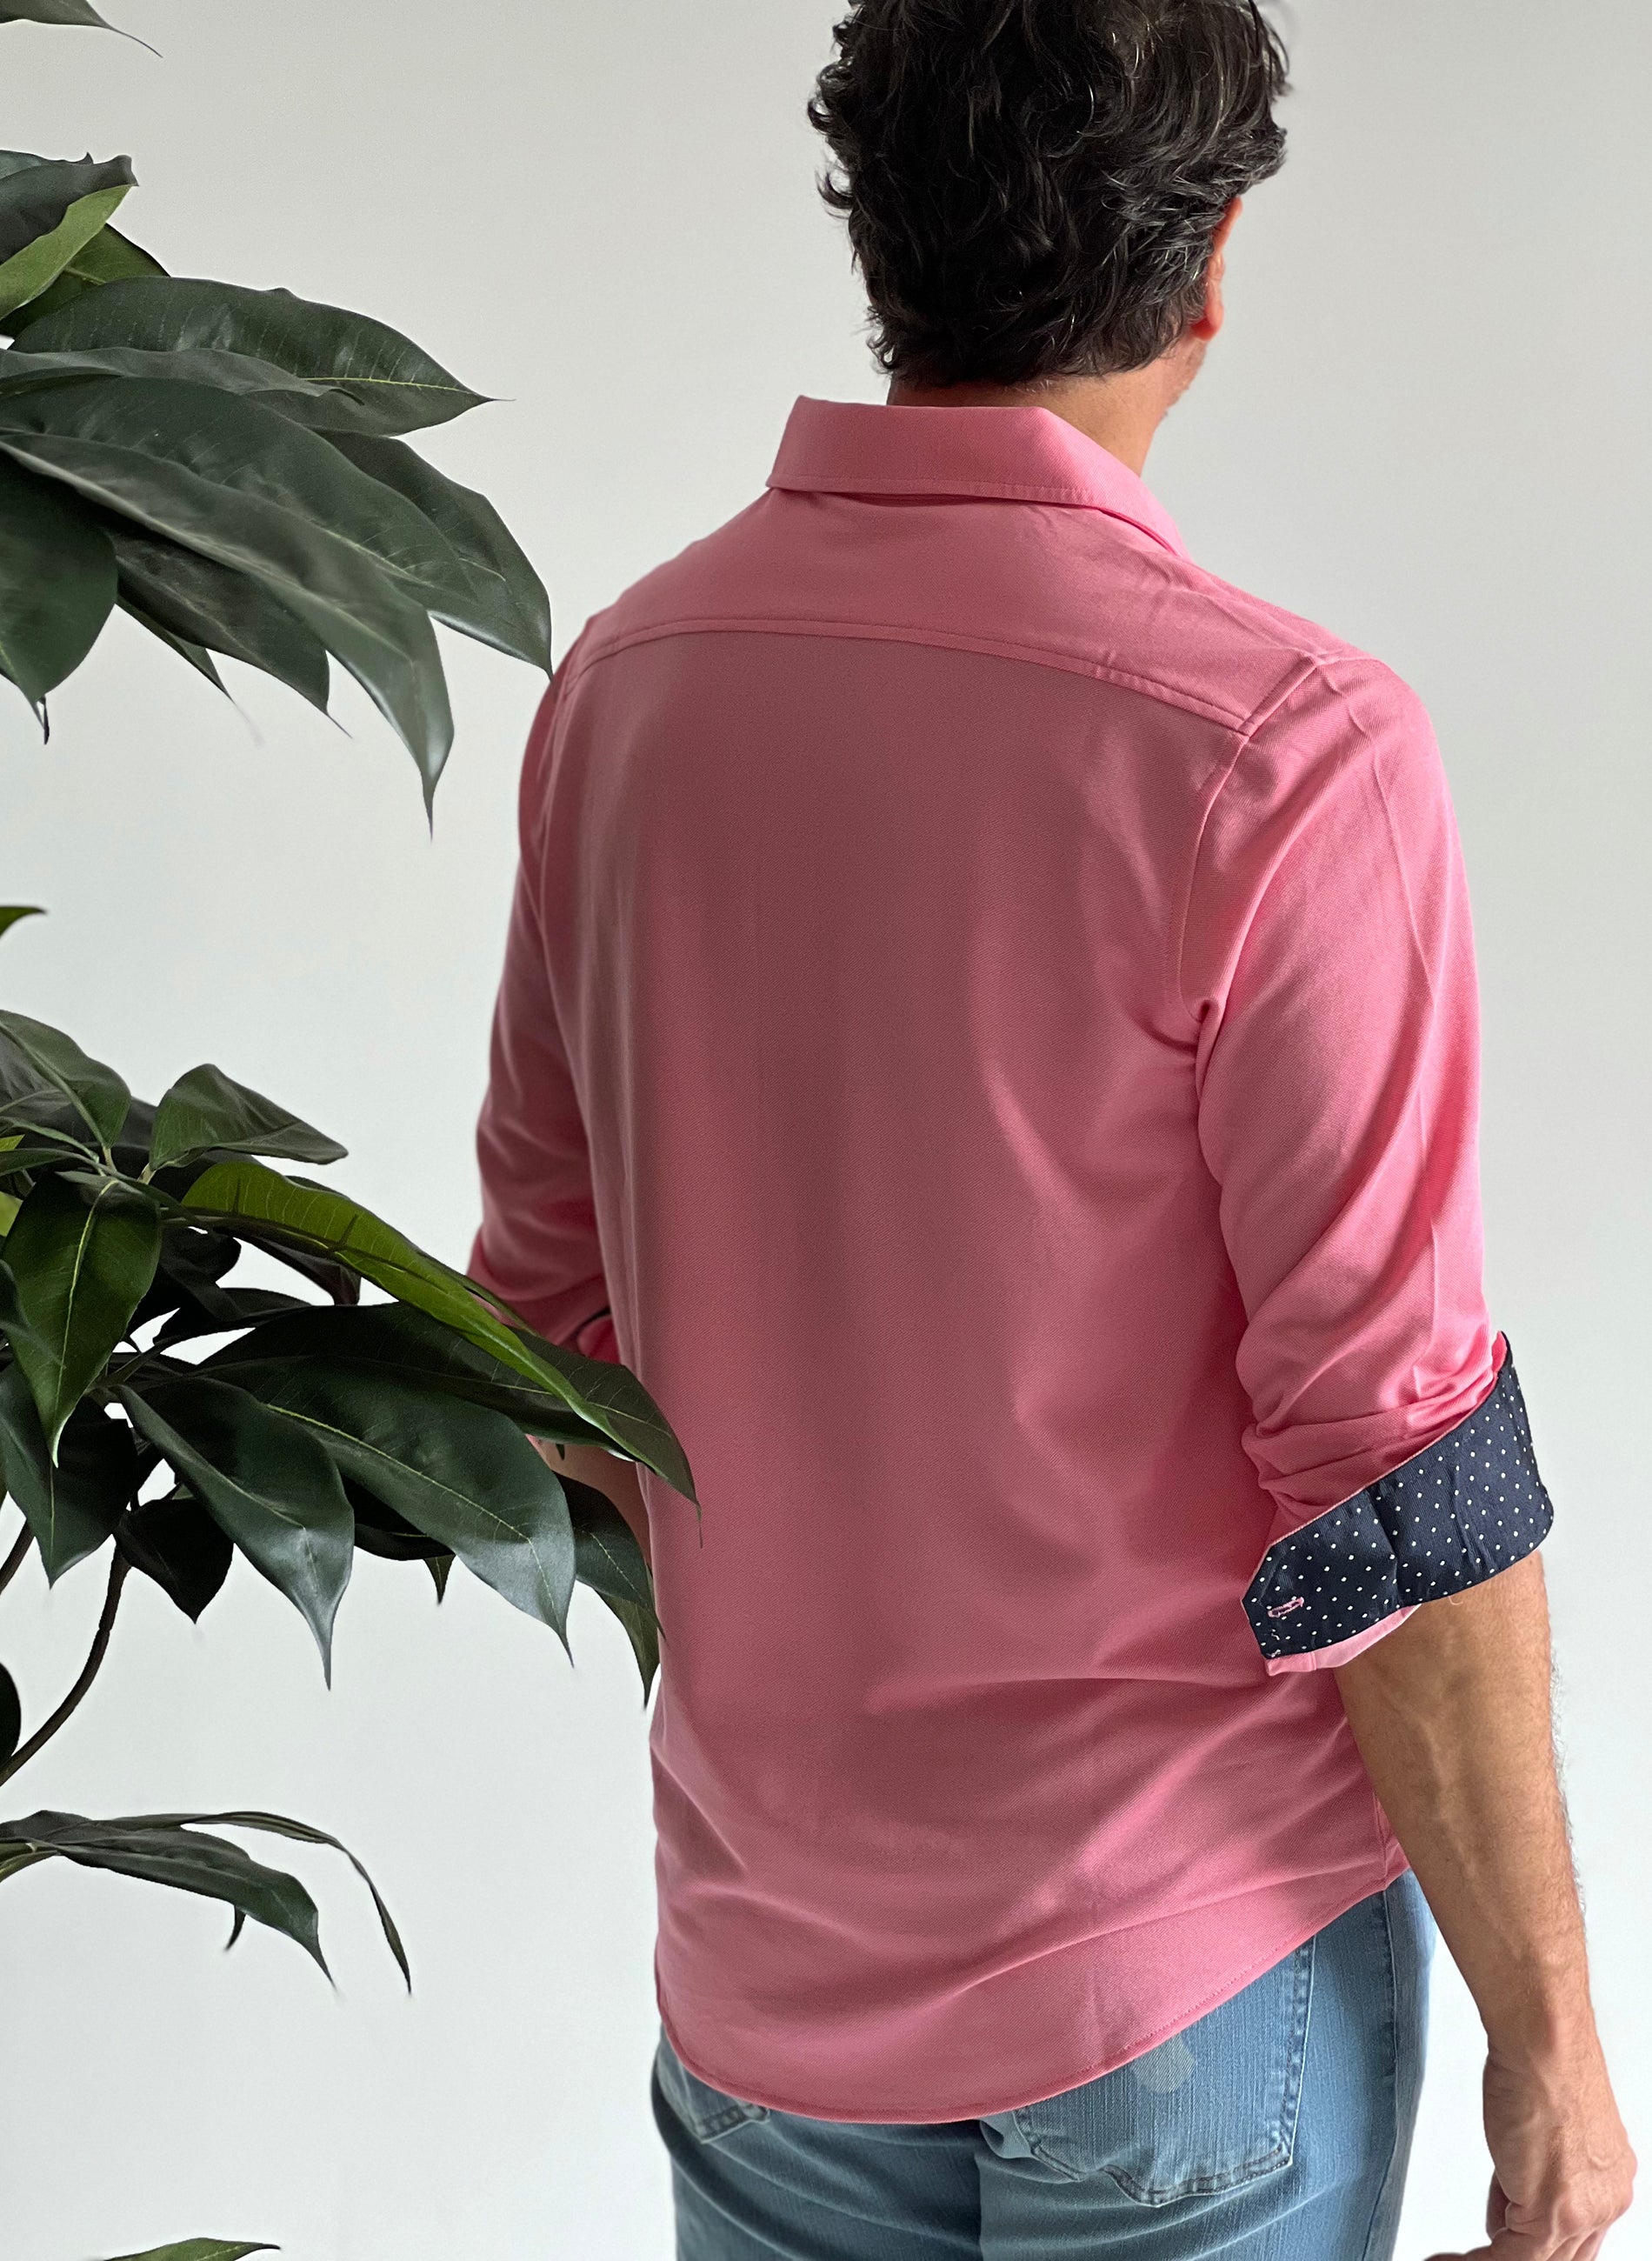 Rosafarbenes Herren-T-Shirt mit kontrastierenden Polka Dots